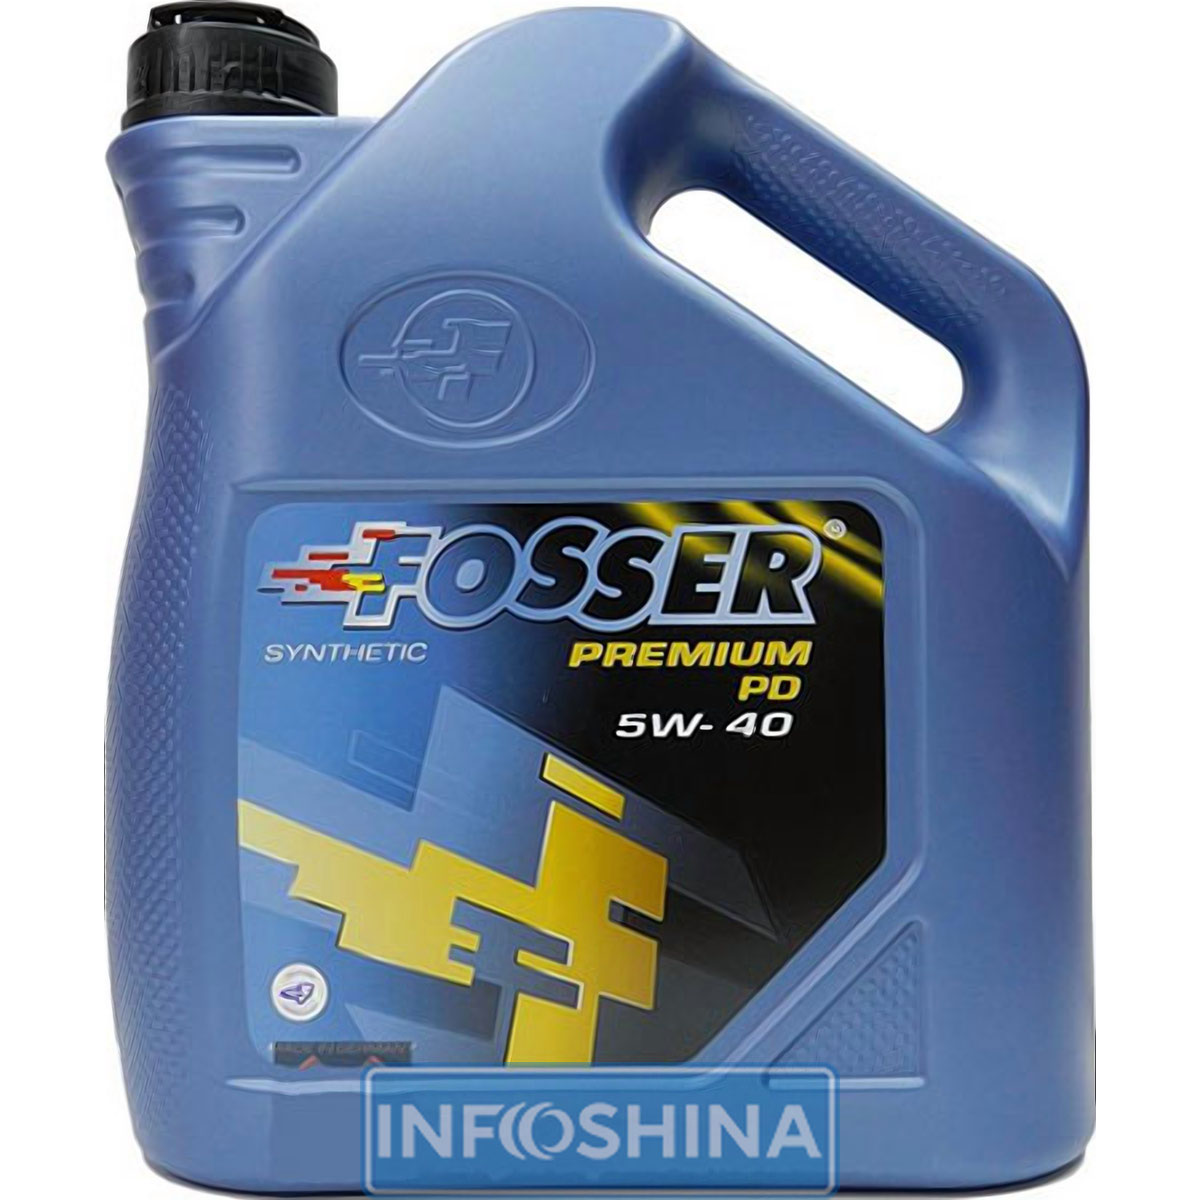 Fosser Premium PD 5W-40